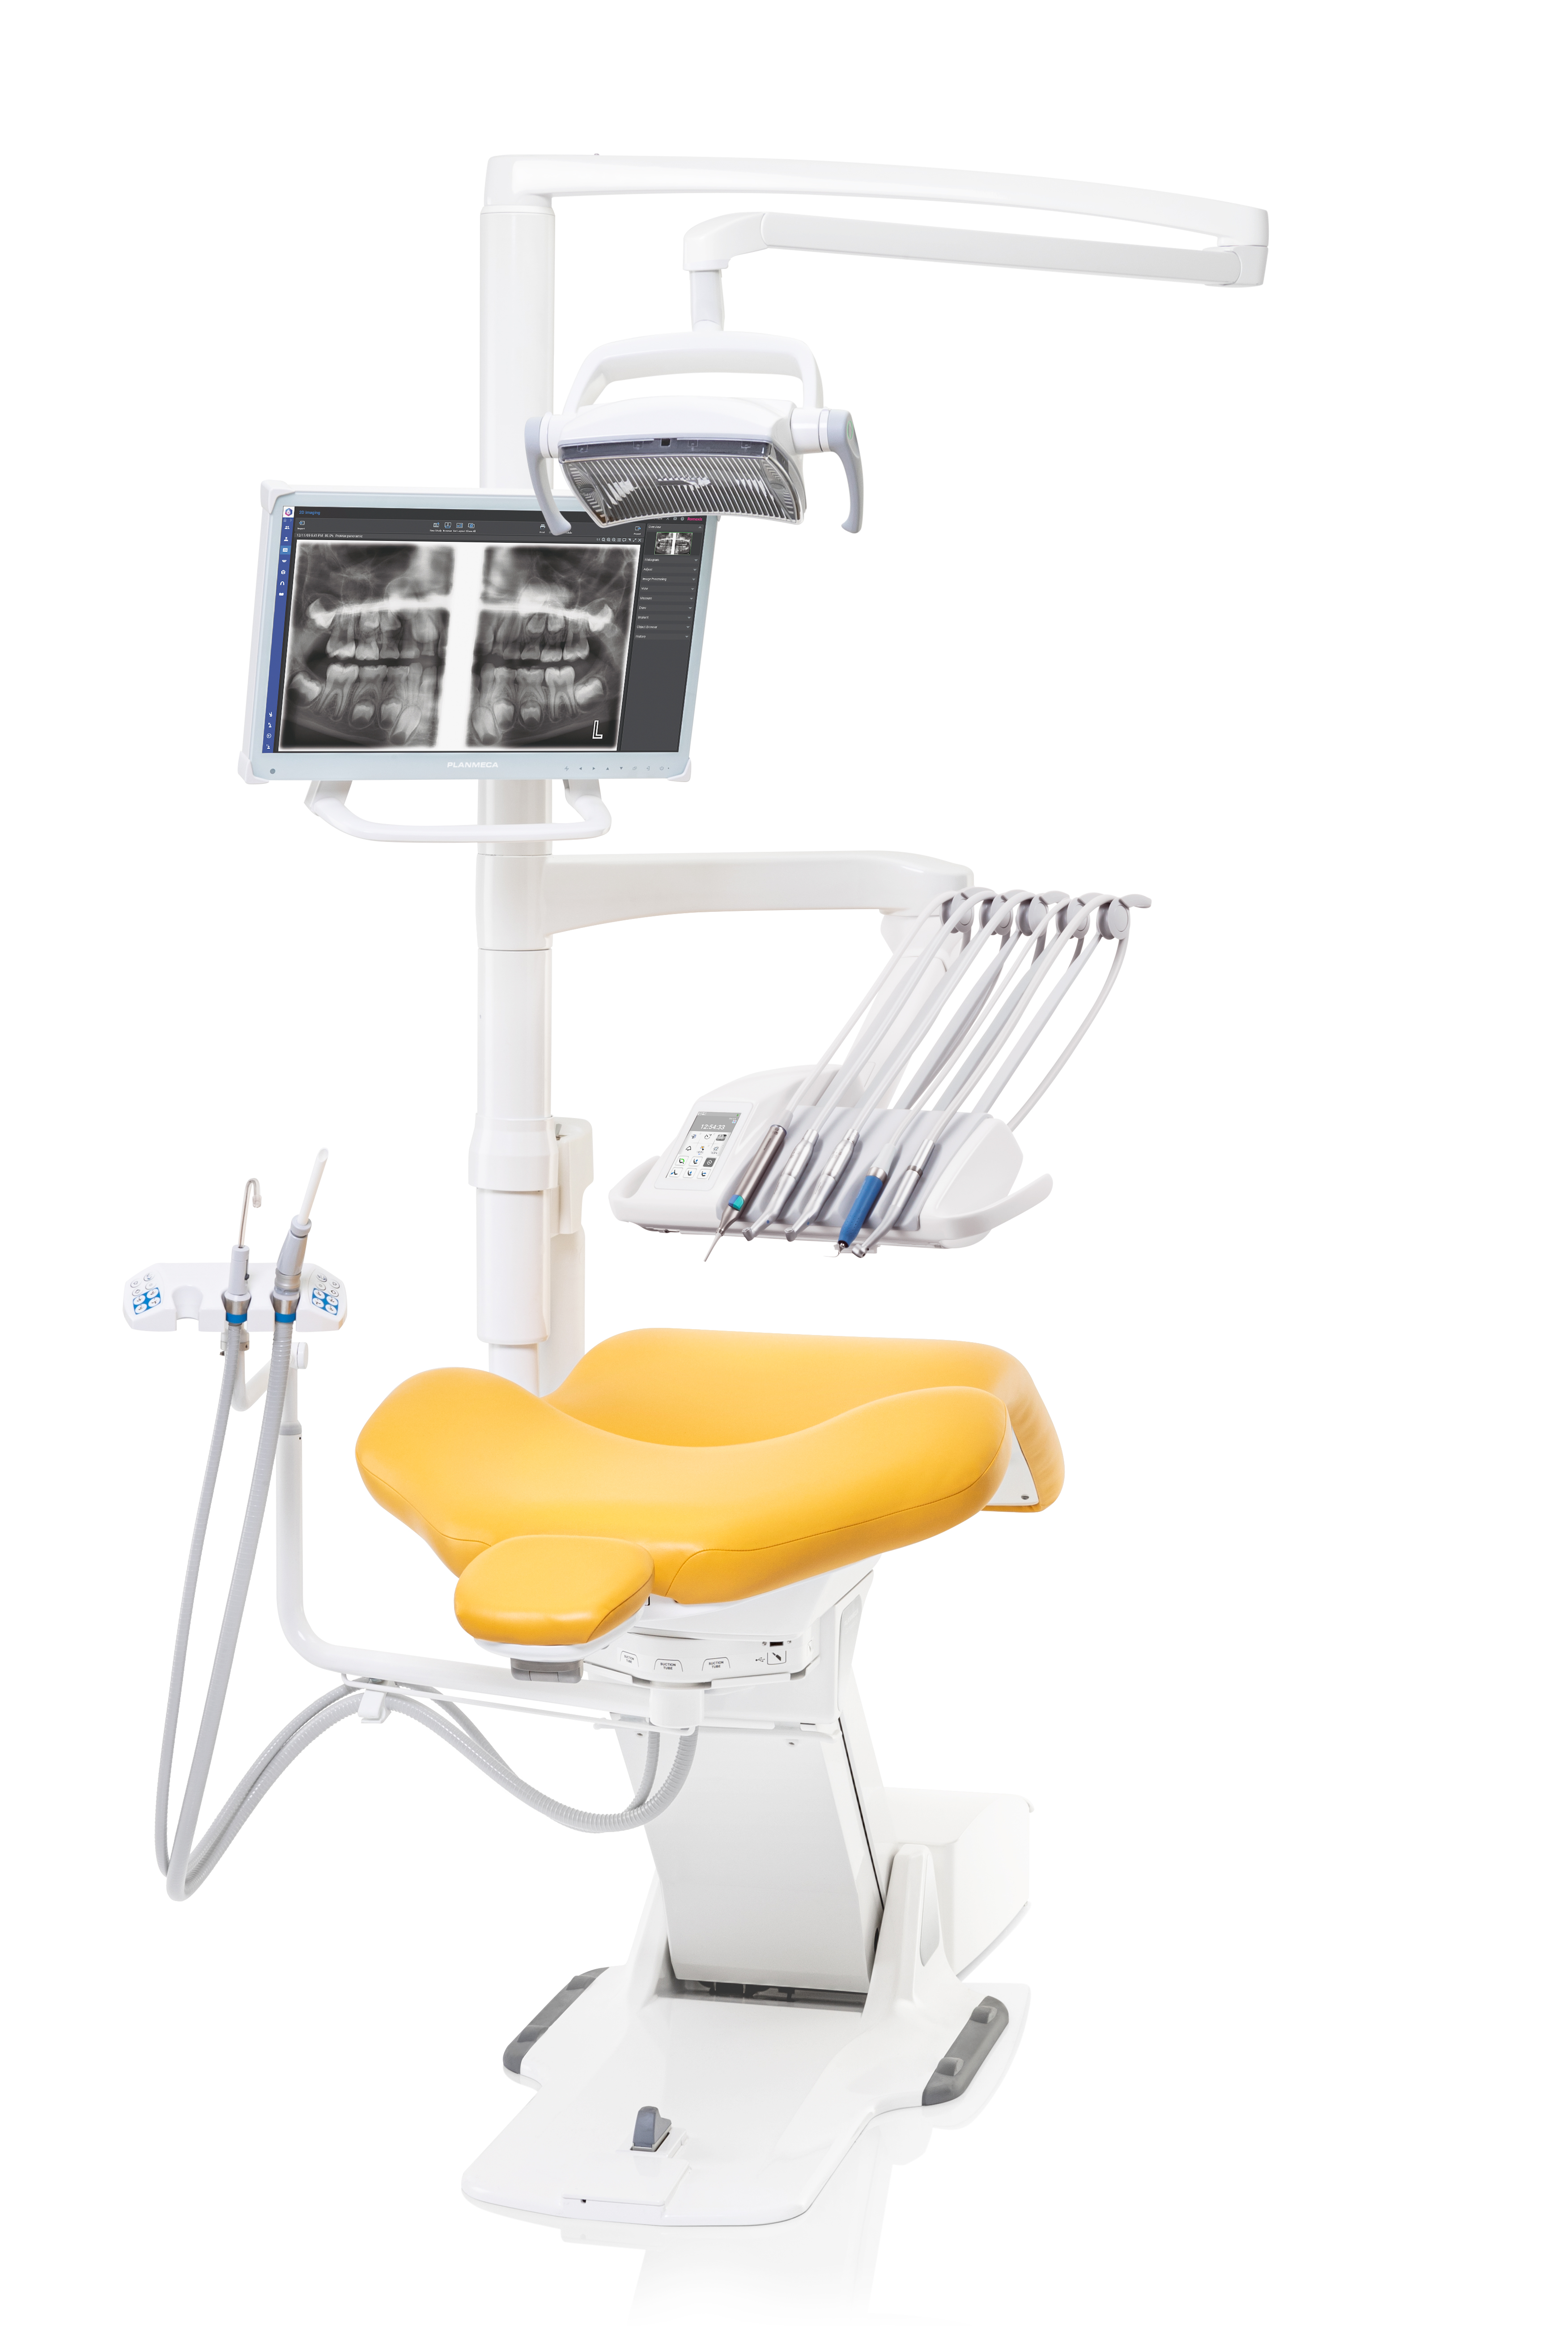 Massima funzionalità e flessibilità per tutti i dentisti con la nuova unità di cure dentali Planmeca